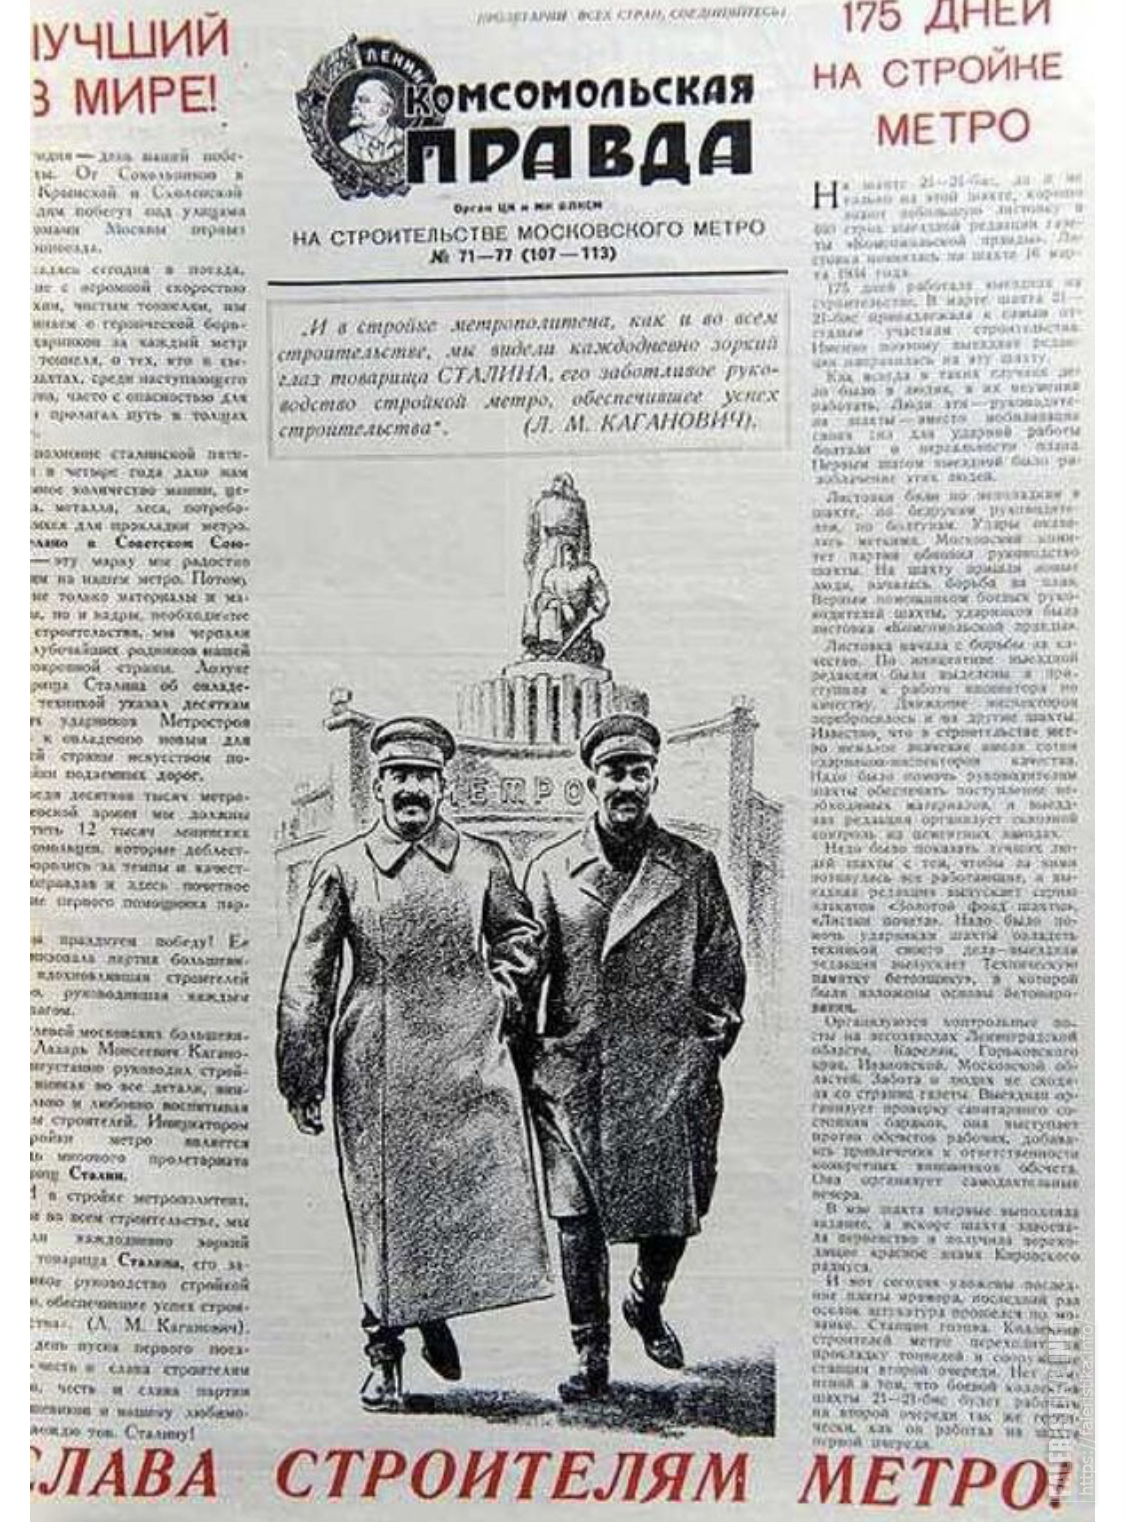 Правда риа. 24 Мая 1925 вышел первый номер газеты Комсомольская. Газета правда. Первый номер газеты правда. Первый номер газеты Комсомольская правда.